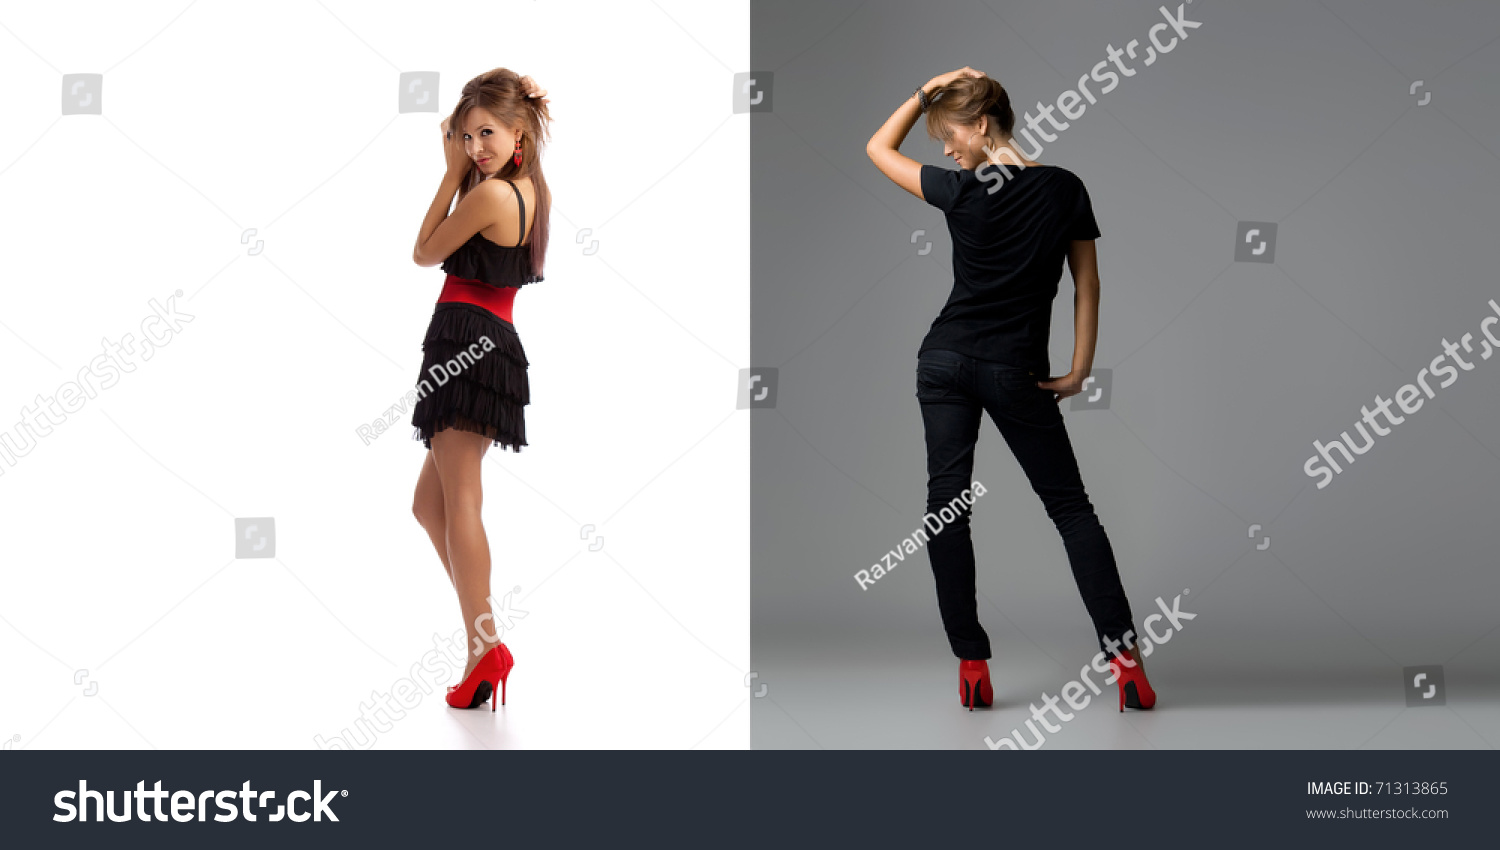 young girl high heels